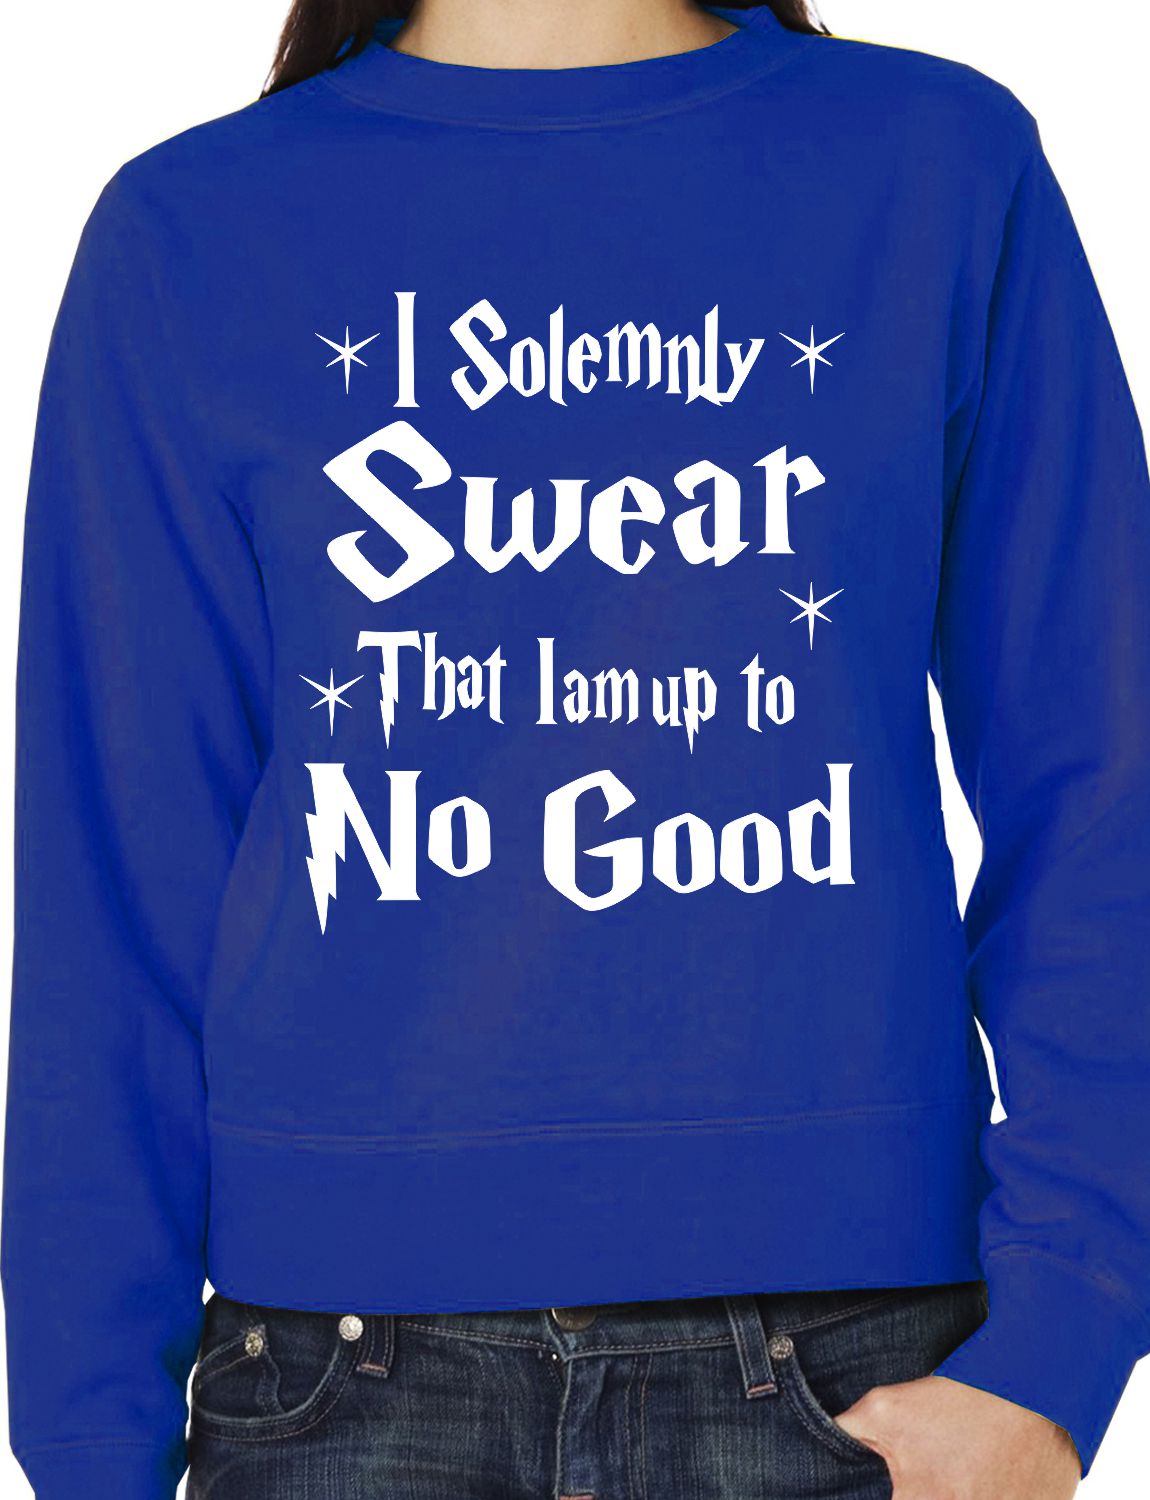 I Do Solemnly Swear I Am Up To No Good Unisex Sweatshirt